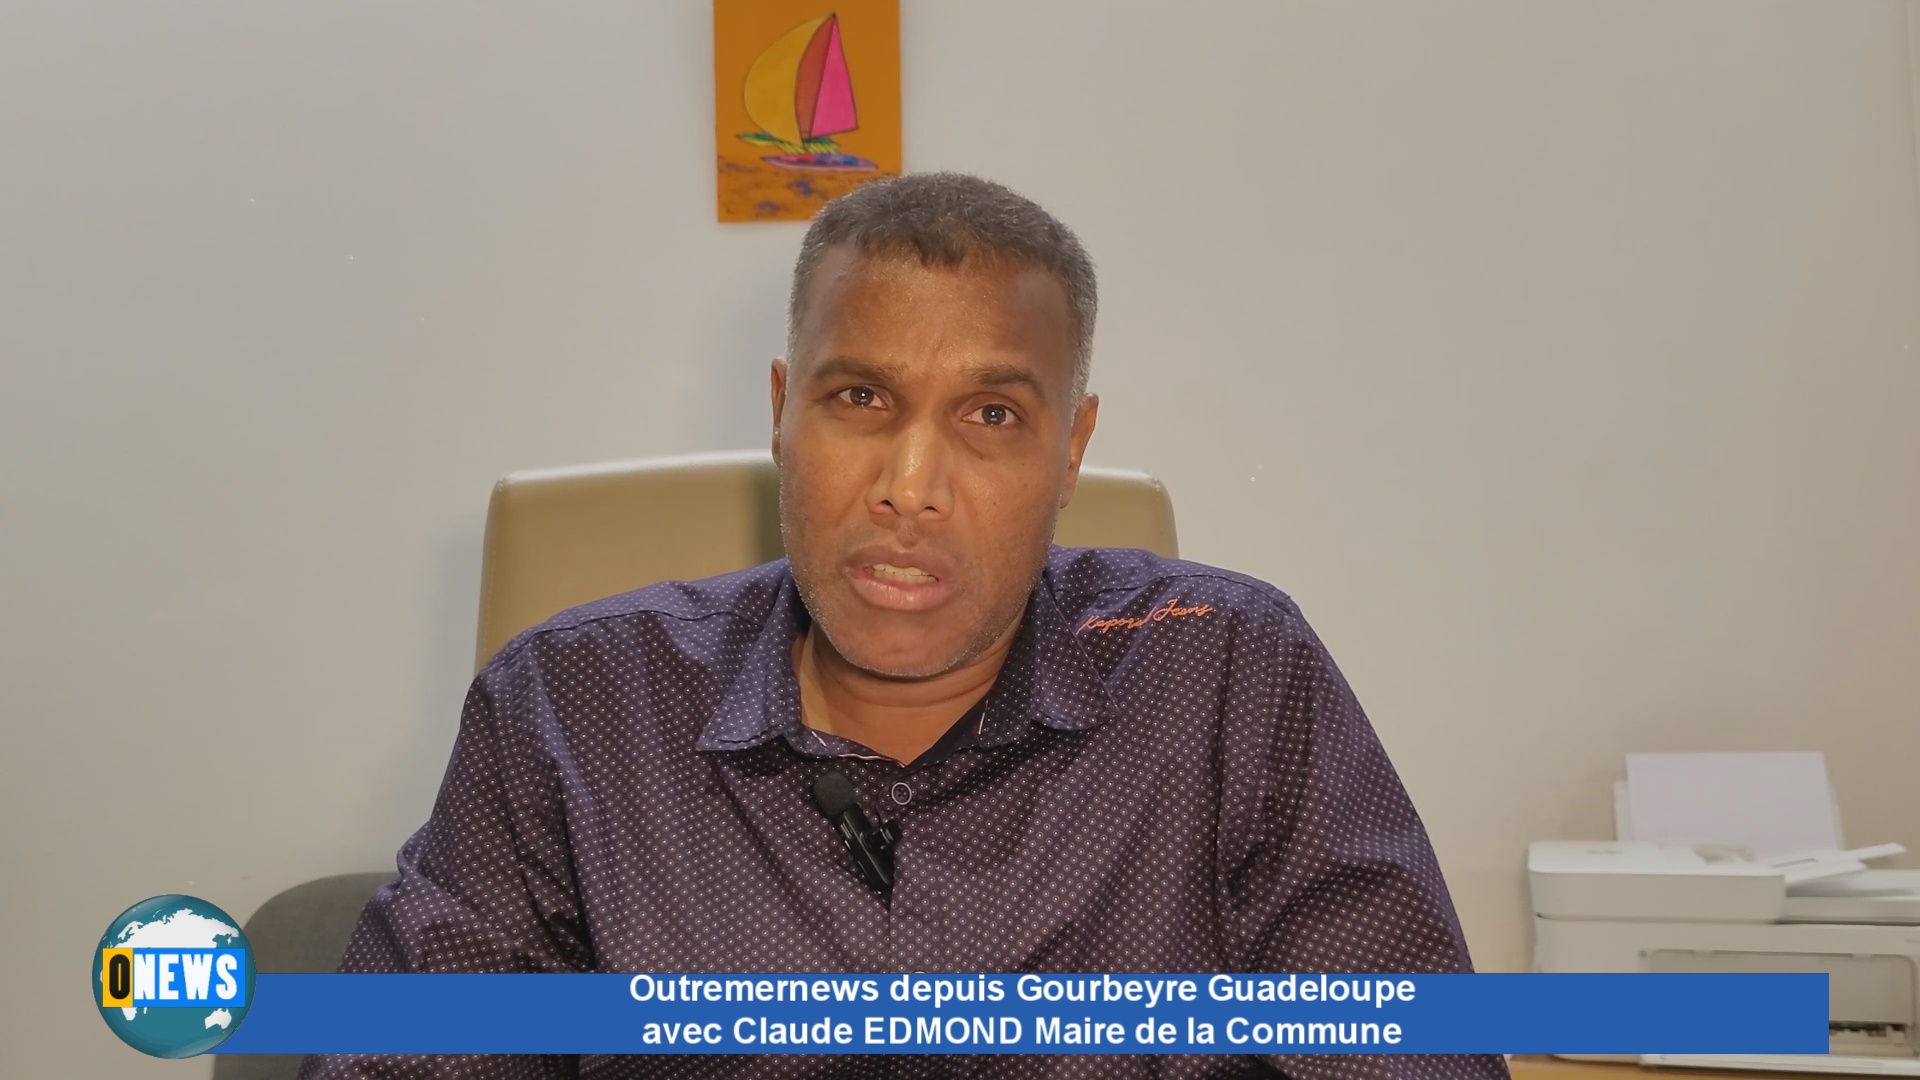 [Vidéo] Outremernews à Gourbeyre Guadeloupe avec le Maire Edmond CLAUDE